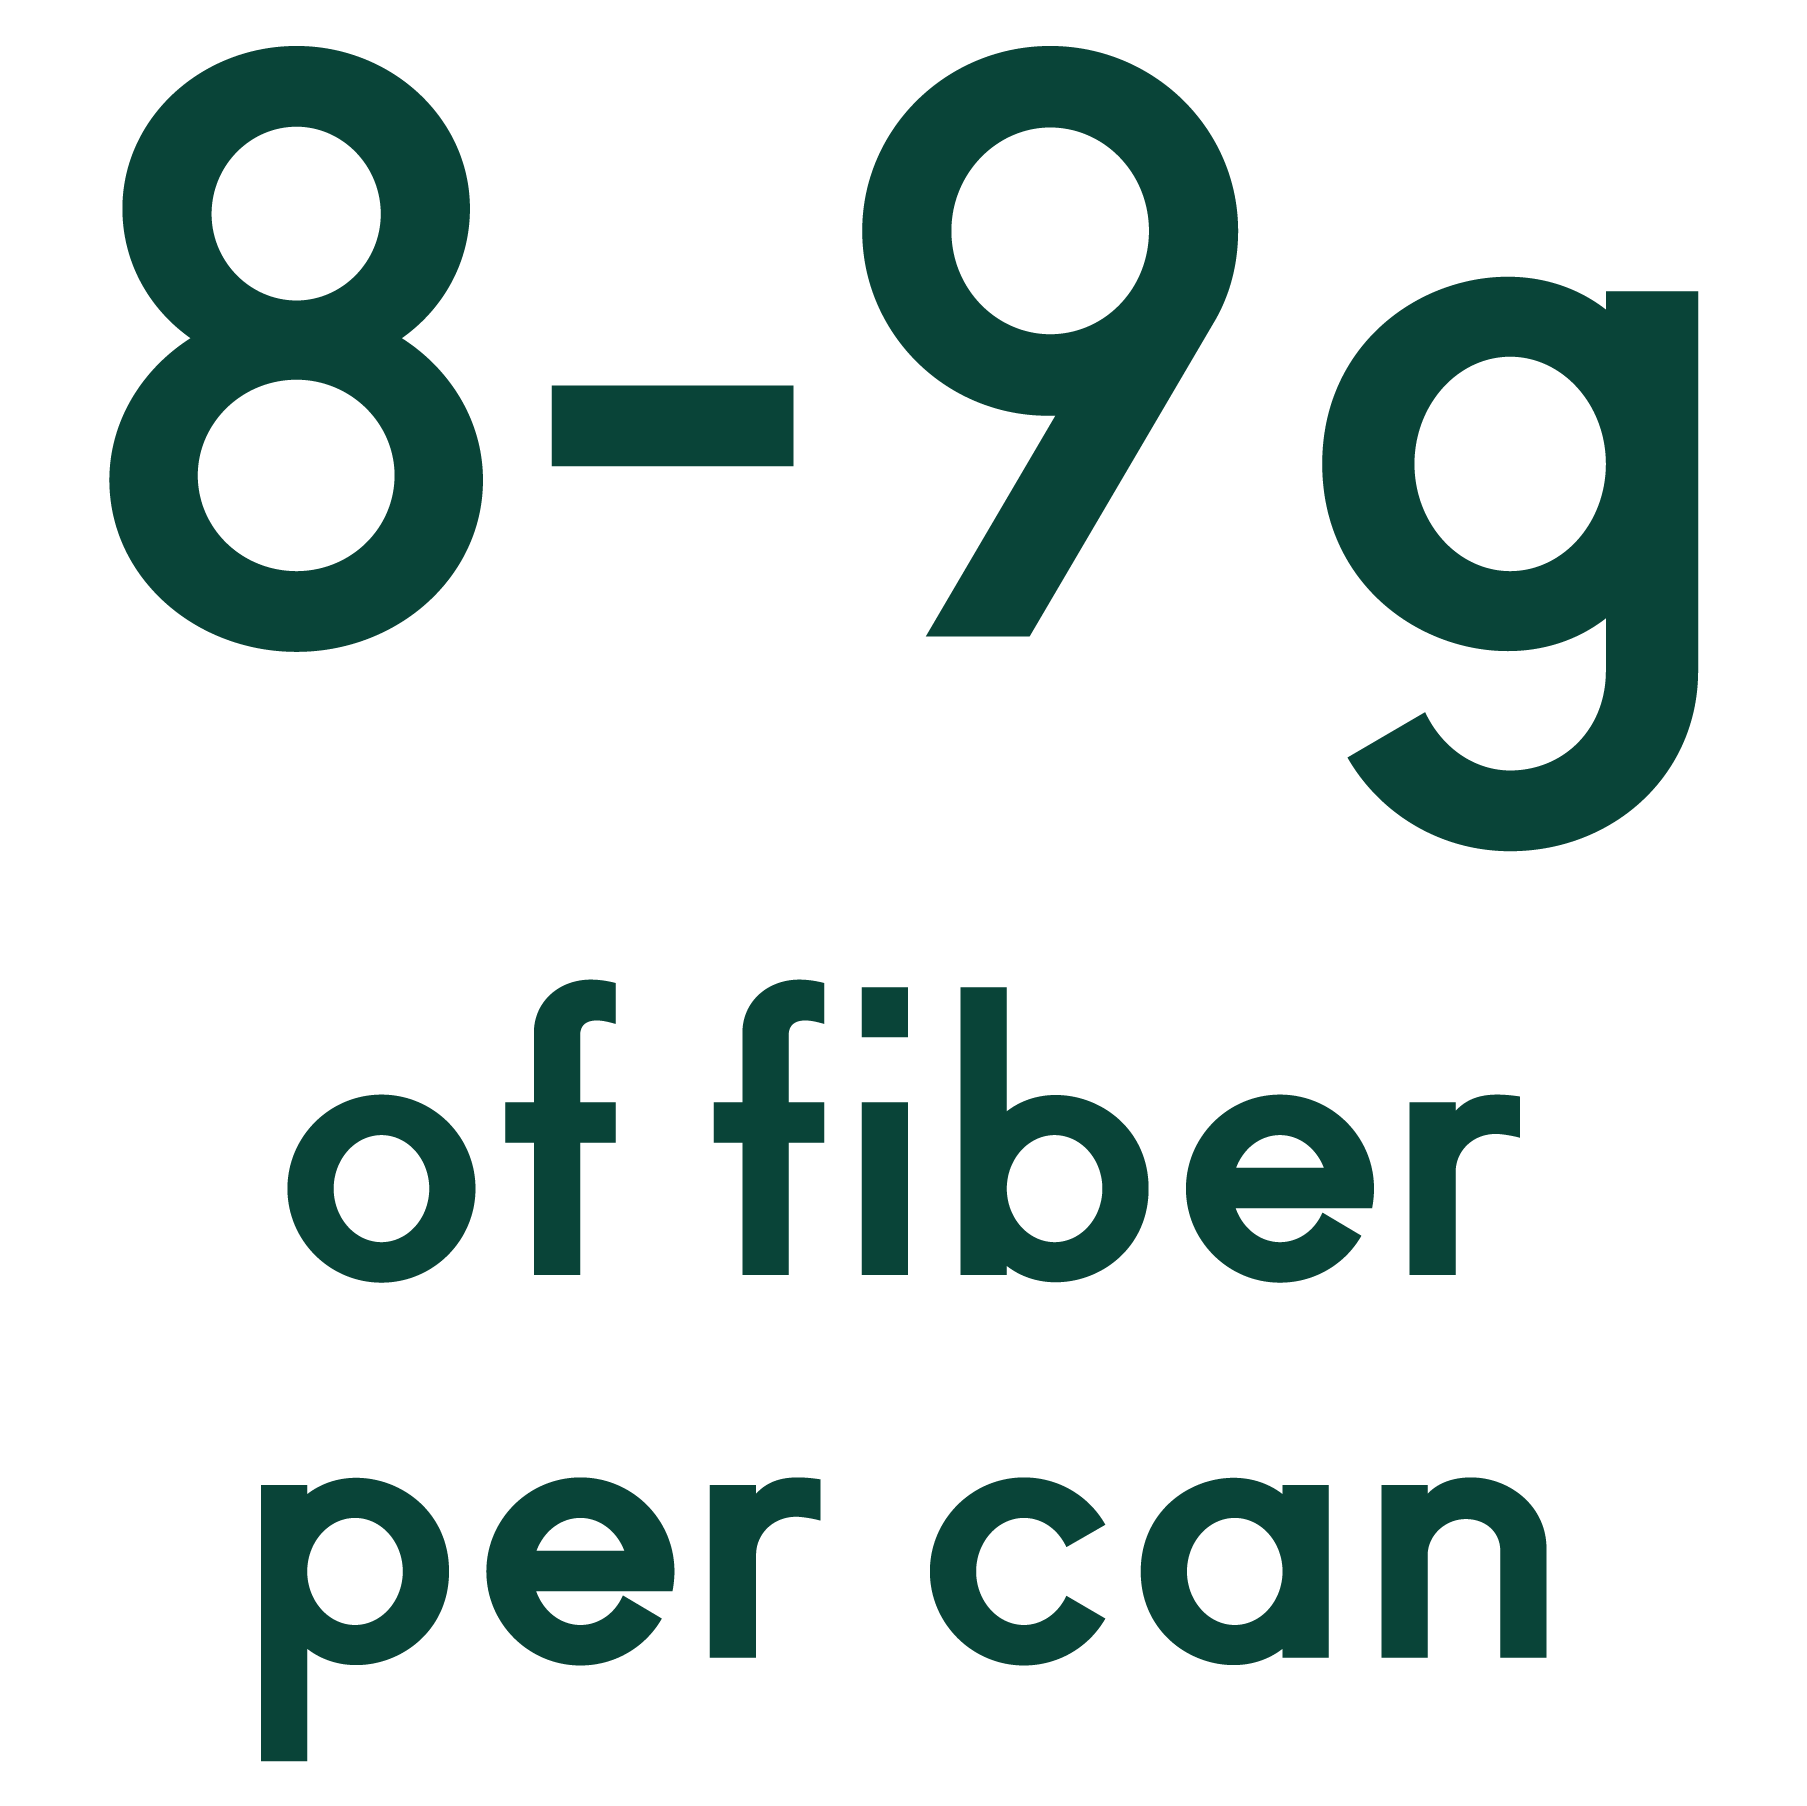 8-9 grams of fiber